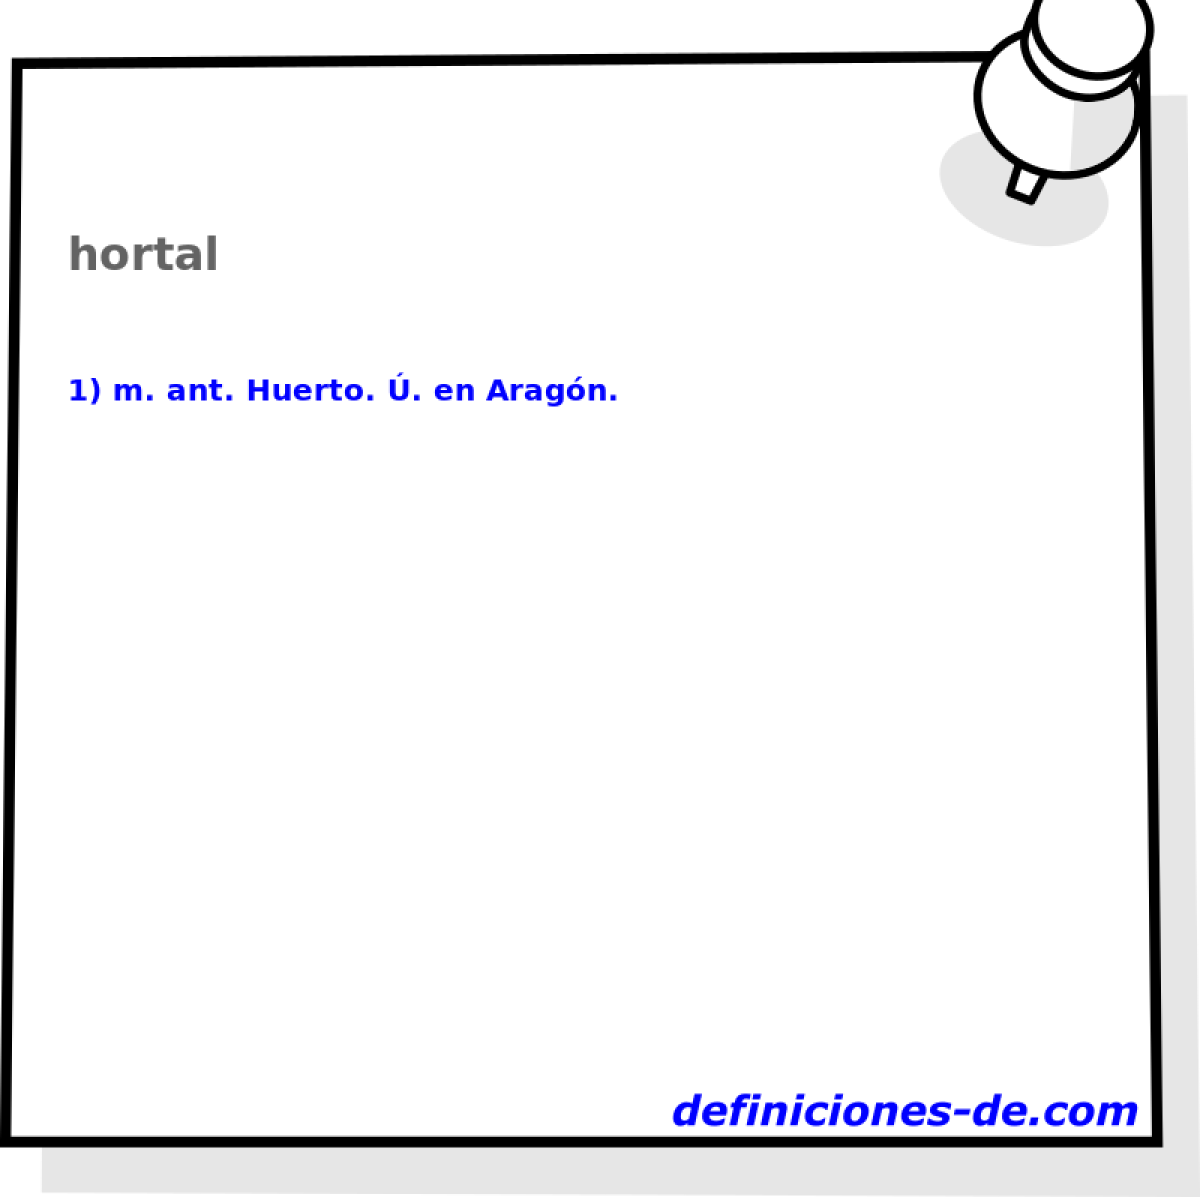 hortal 